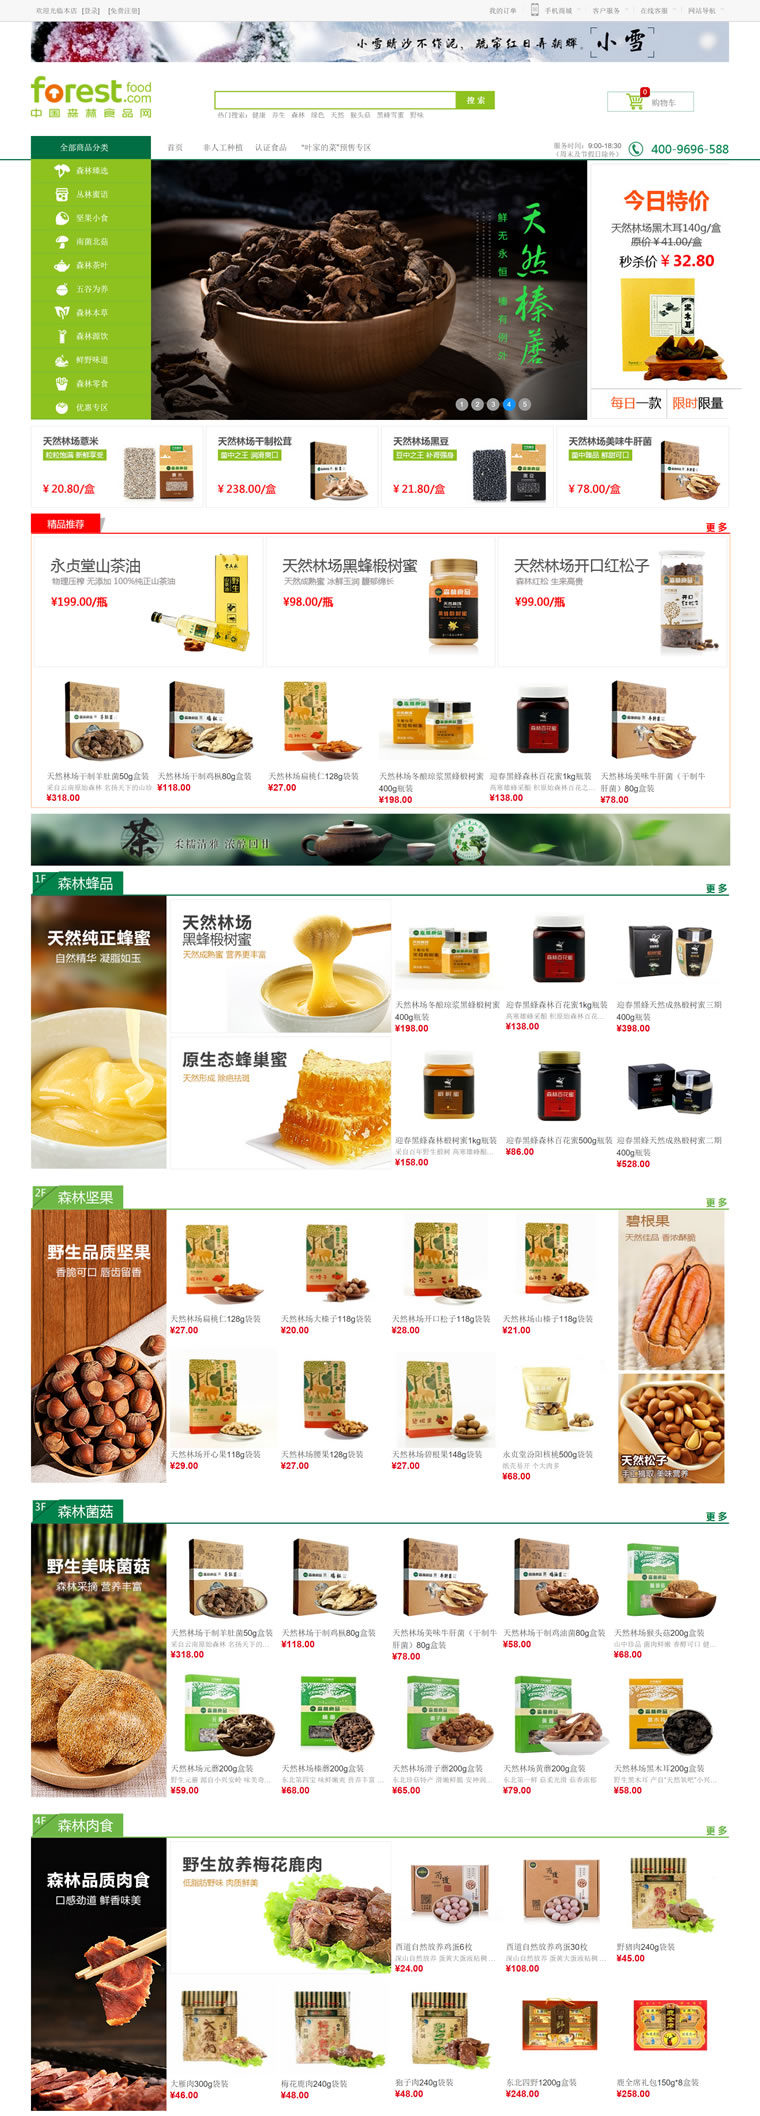 中国森林生态产品购物网站：中国森林食品网